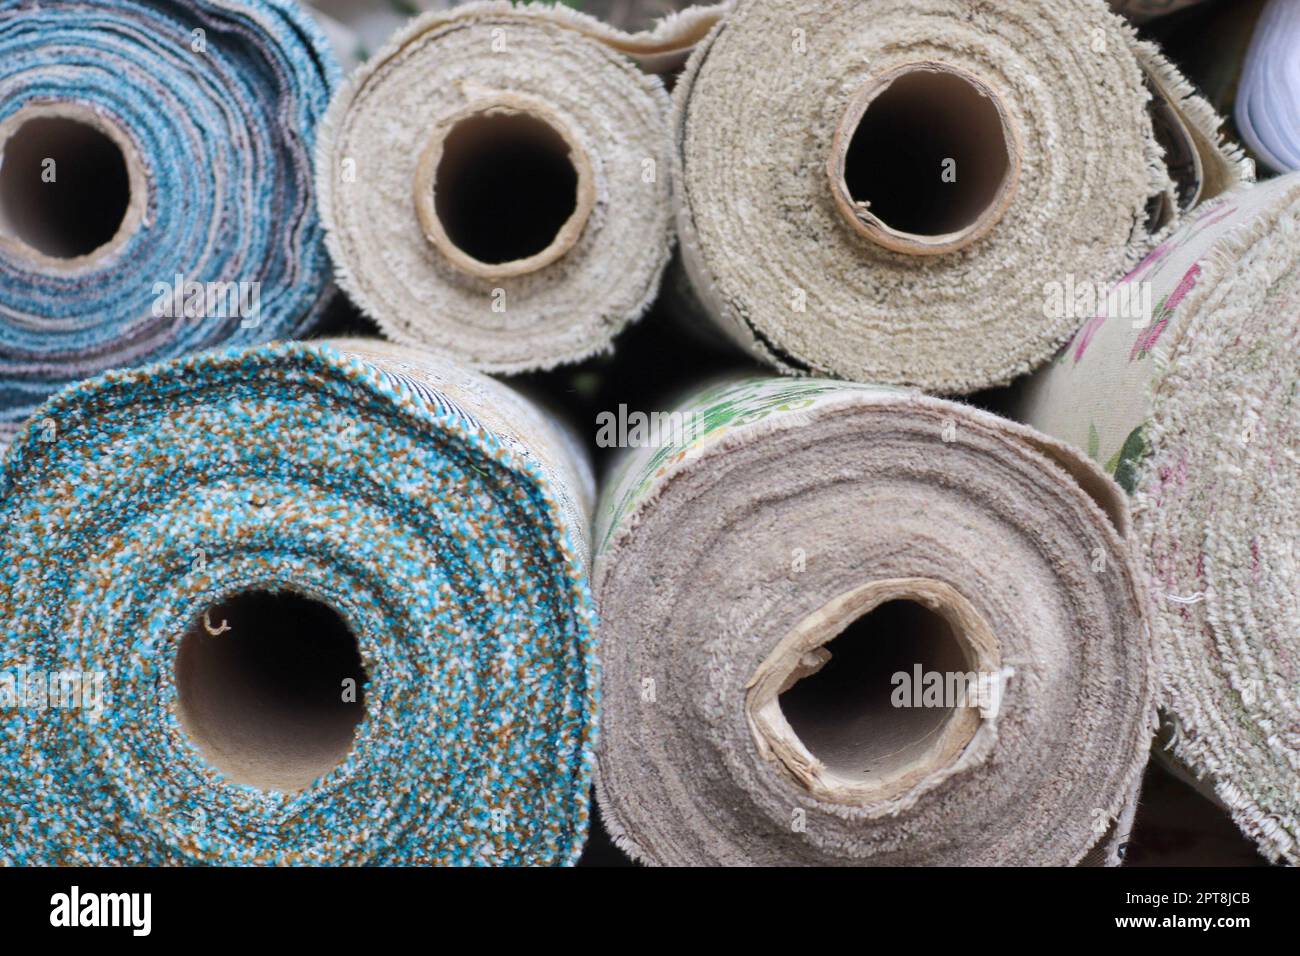 Échantillons de tissus et de tissus de différentes couleurs trouvés sur un marché de tissus. Banque D'Images